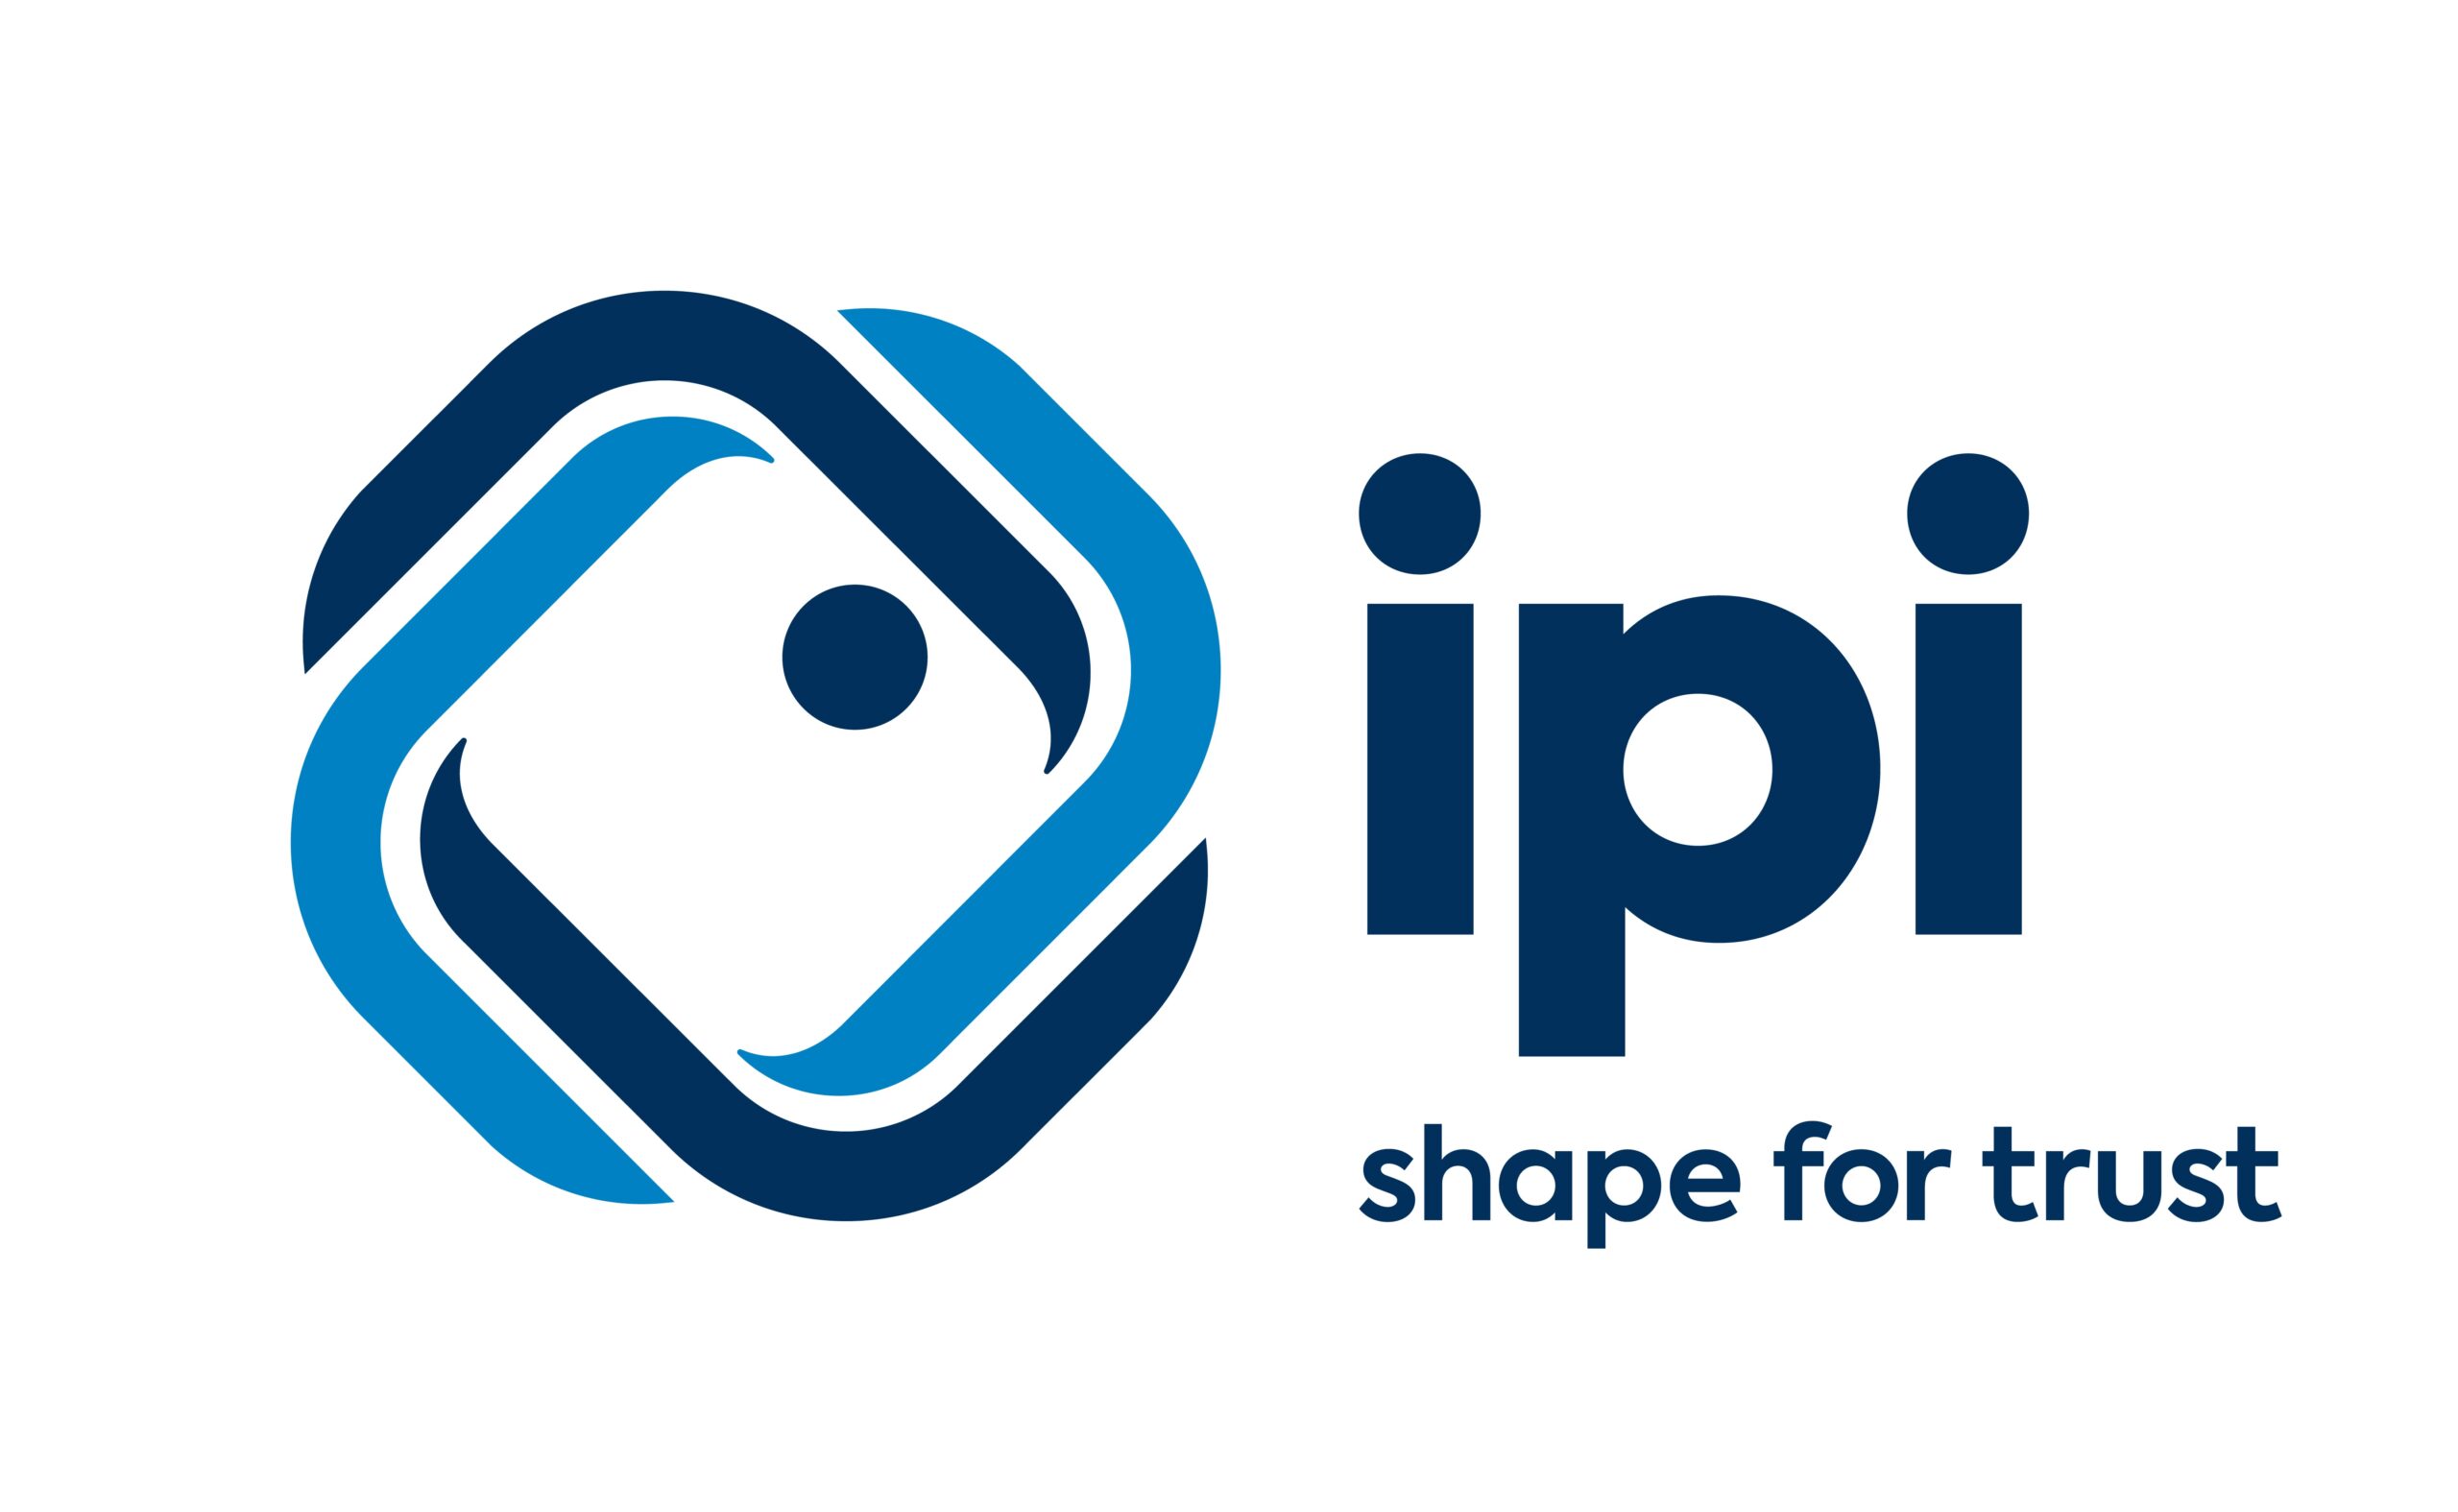 IPI srl logo